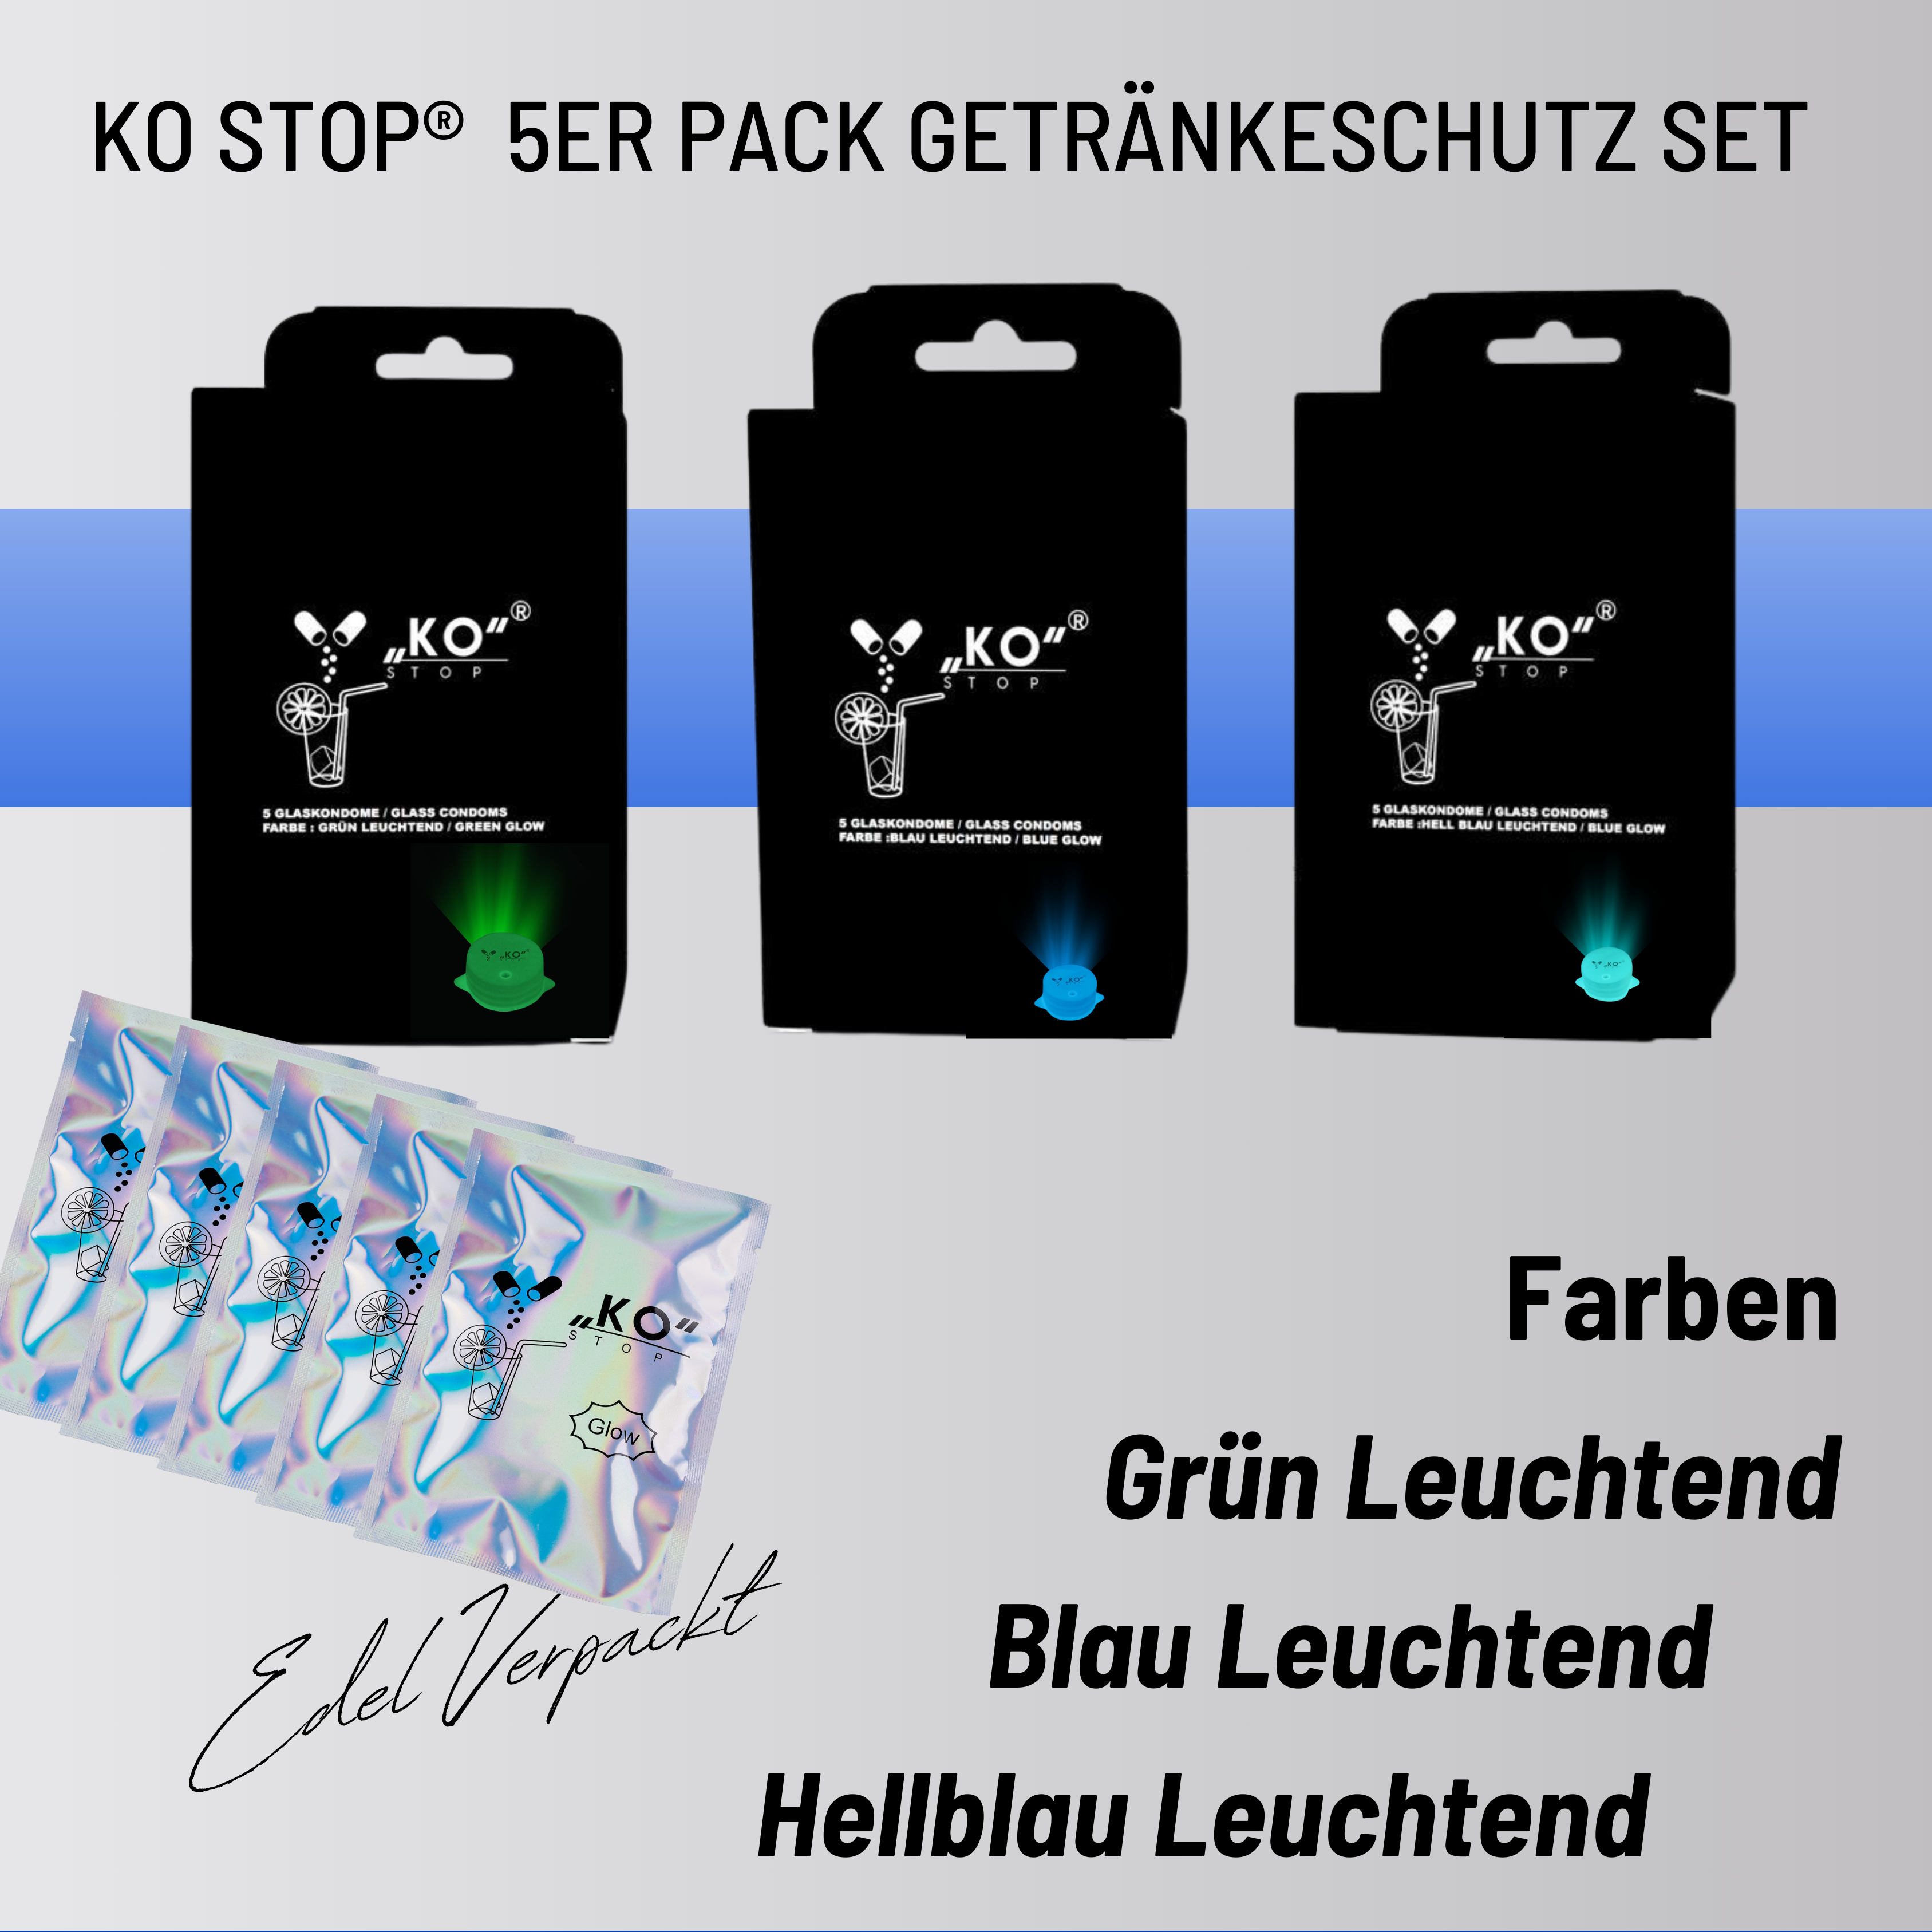 KO Stop® 5er Pack Getränkeschutz gegen K.o. Tropfen, Insekten und Verschüttungen – jetzt mit Leuchteffekt für sicheres Feiern Blau leuchtend